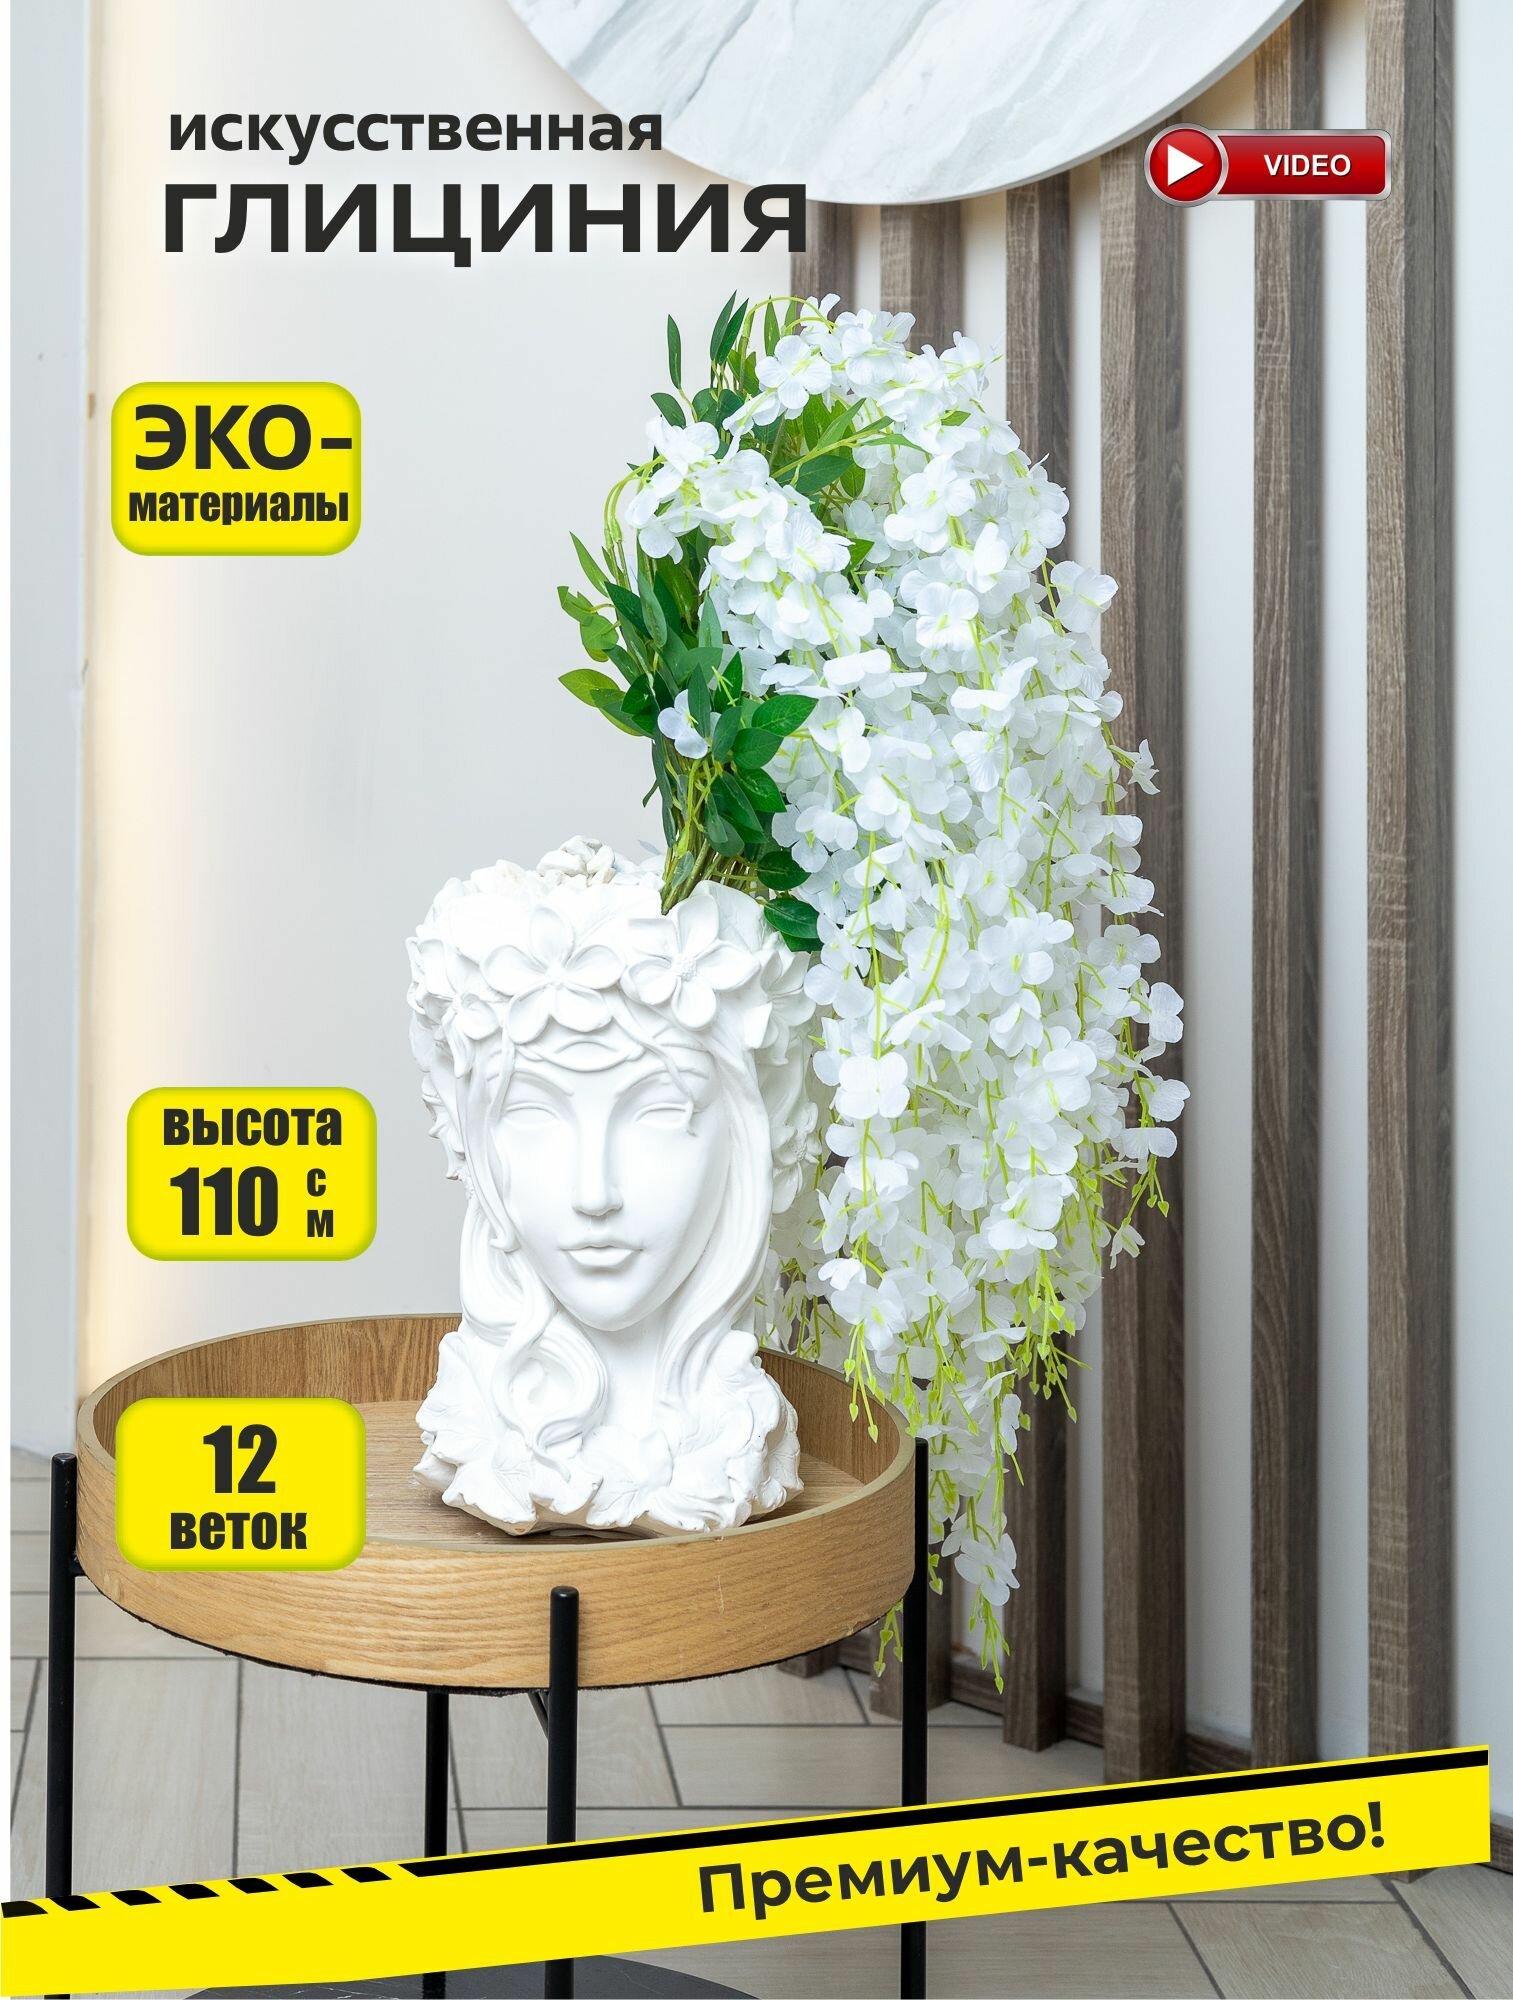 Искусственное растение глициния белая для декора интерьера, 12 веток, 110 см